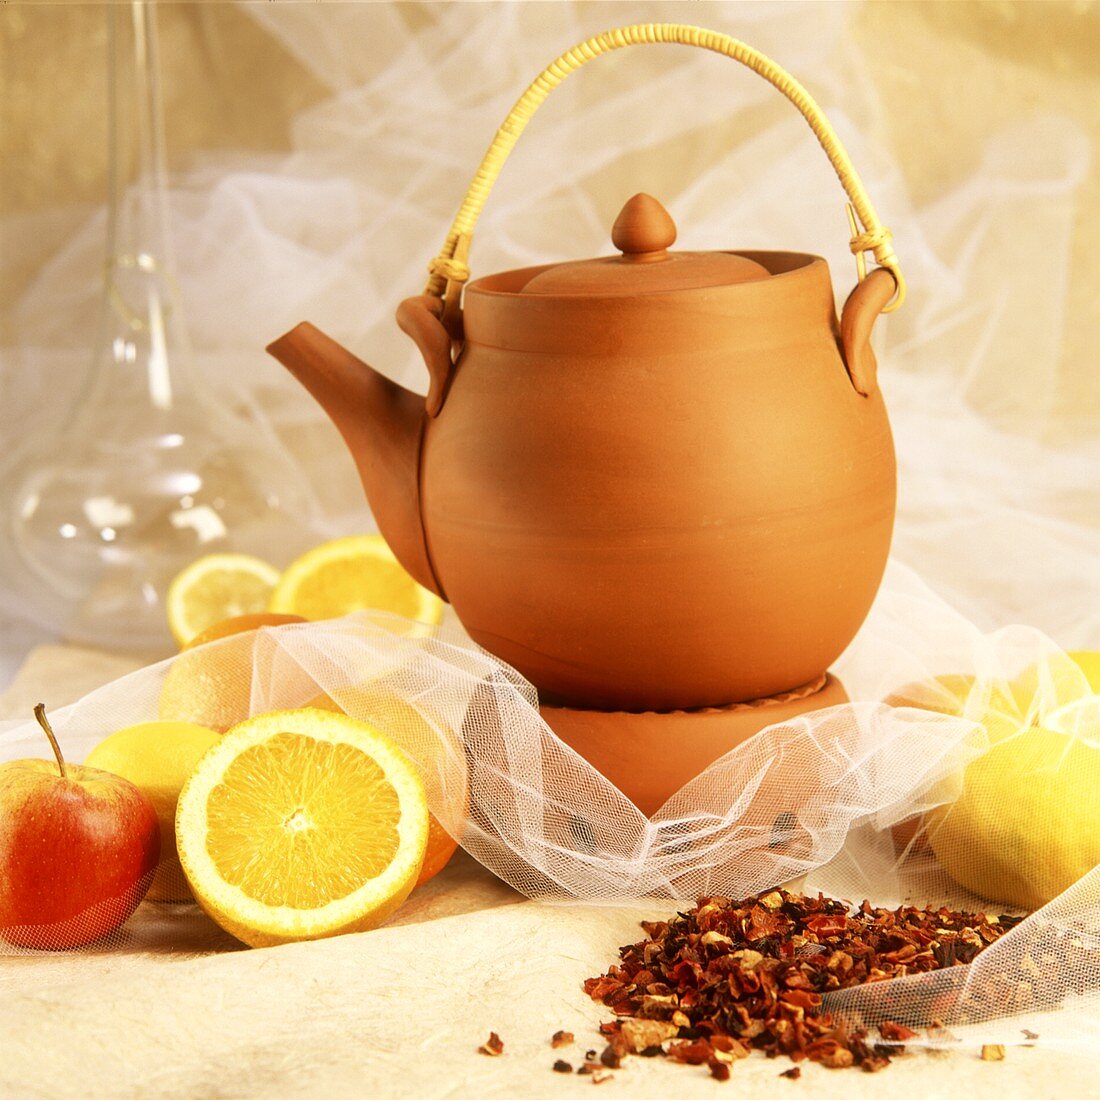 Terracotta tea pot, beside it fruit tea, lemons and apples